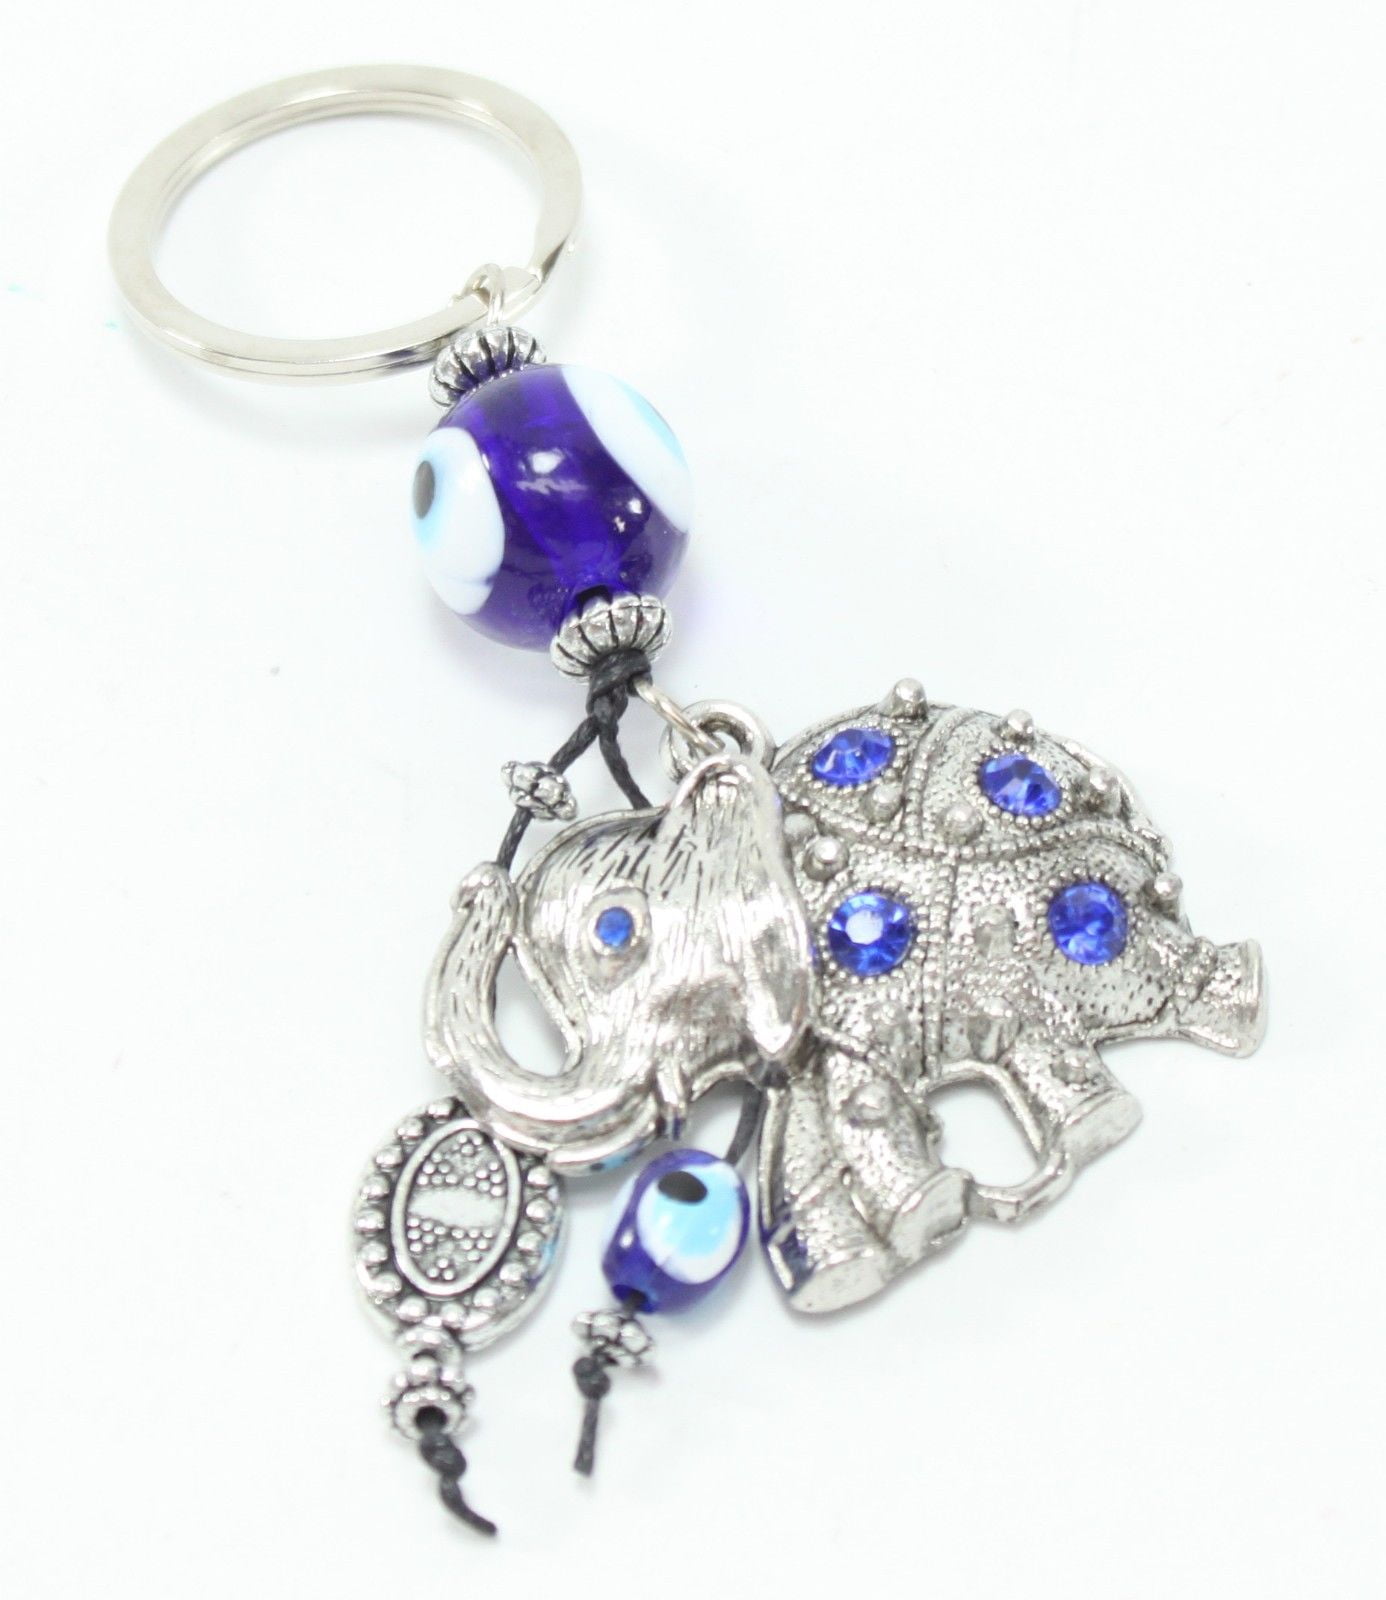 Blue Evil Eye Owl Keychain Blessing Protection Religious Charm Gift US Seller 